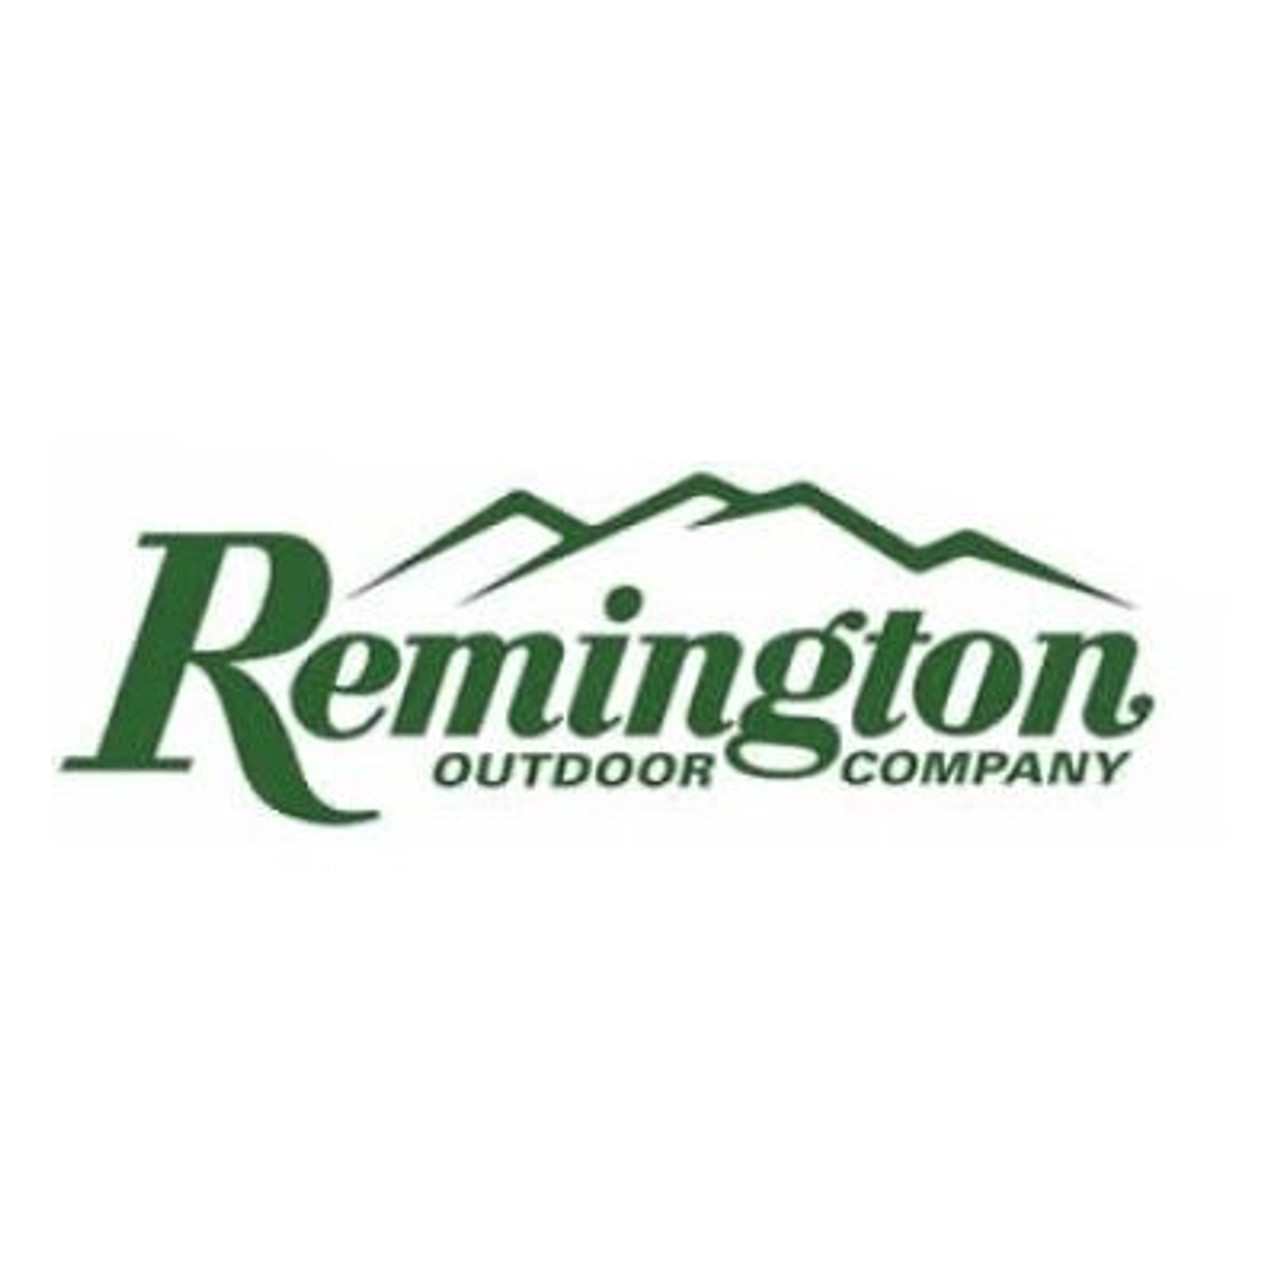 Remington Express Spike Flat Pellets 400 .177 (4.5mm) Target